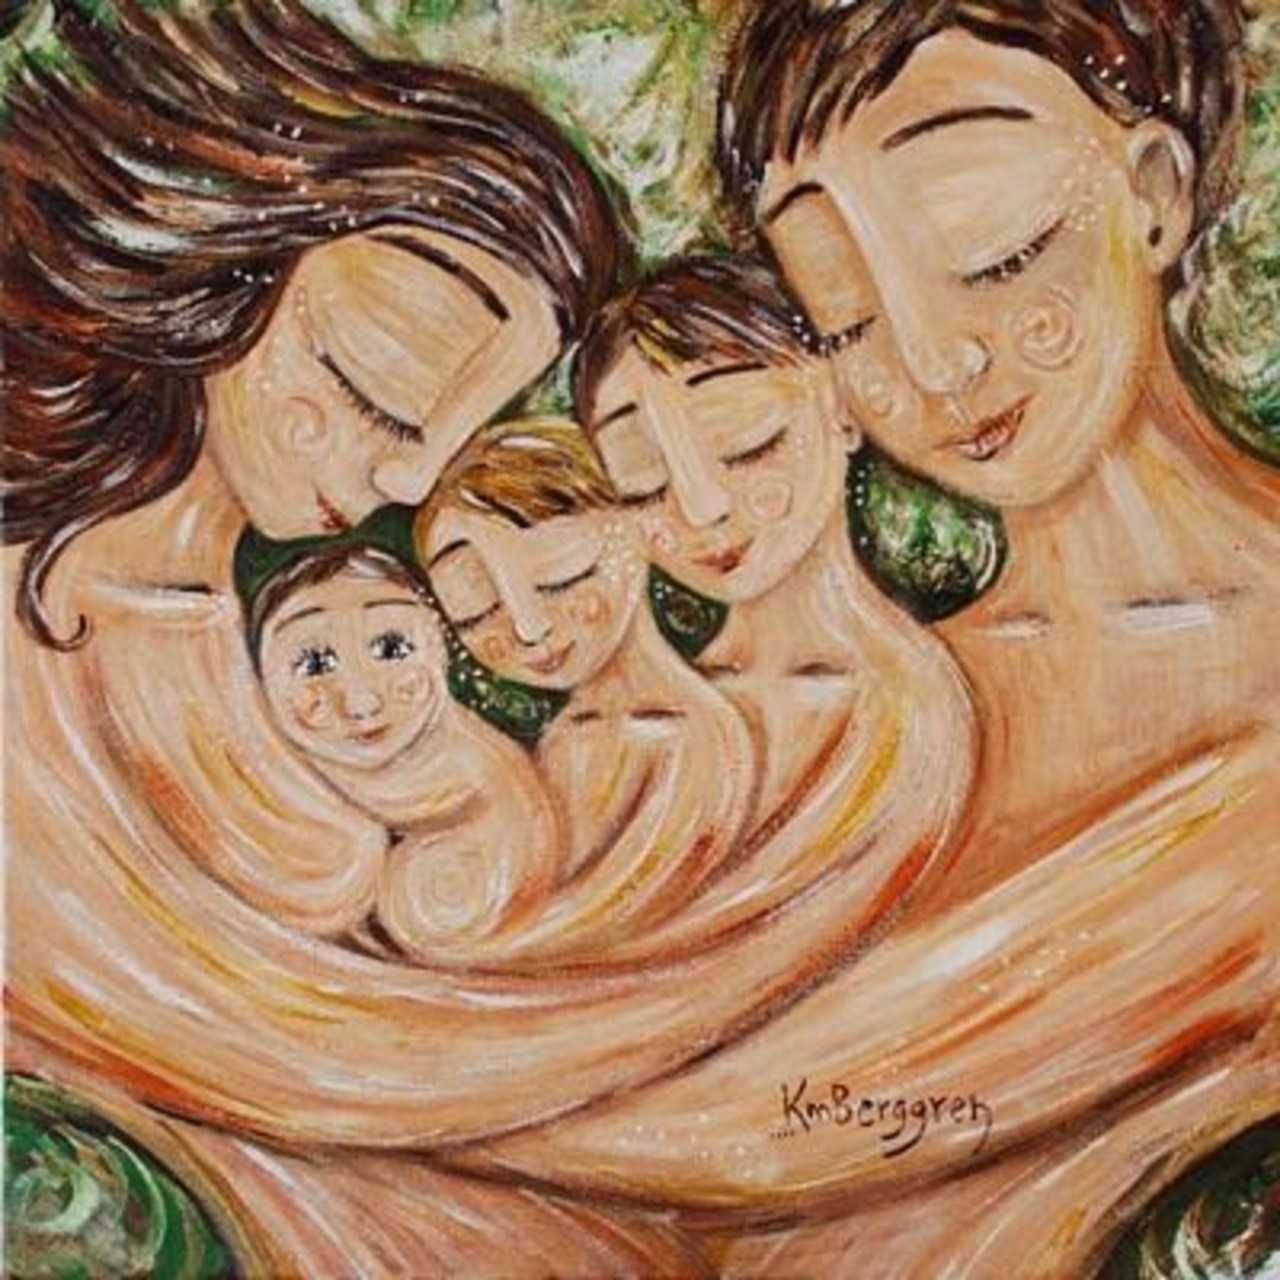 Танец счастье это мамины. Художница Кэти Берггрен. Кэти Берггрен 3 детей. Художник Кэти Берггрен счастливая семья. Картины Кэти Берггрен материнство.